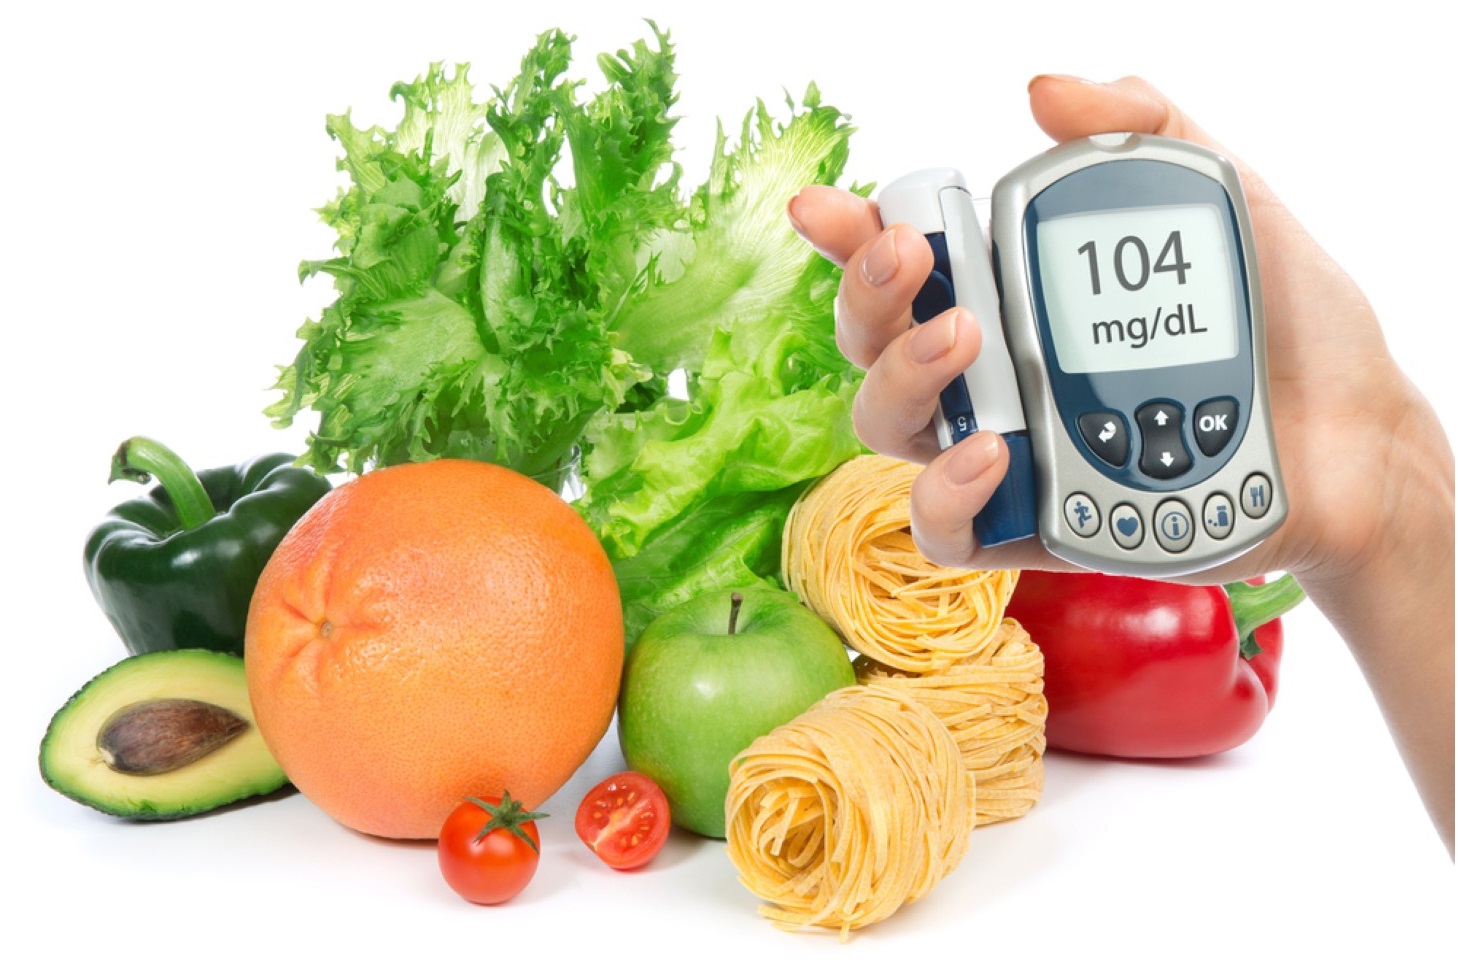 Giữ vững thành phần và thời gian ăn trong những ngày Tết là rất quan trọng để kiểm soát chỉ số đường huyết